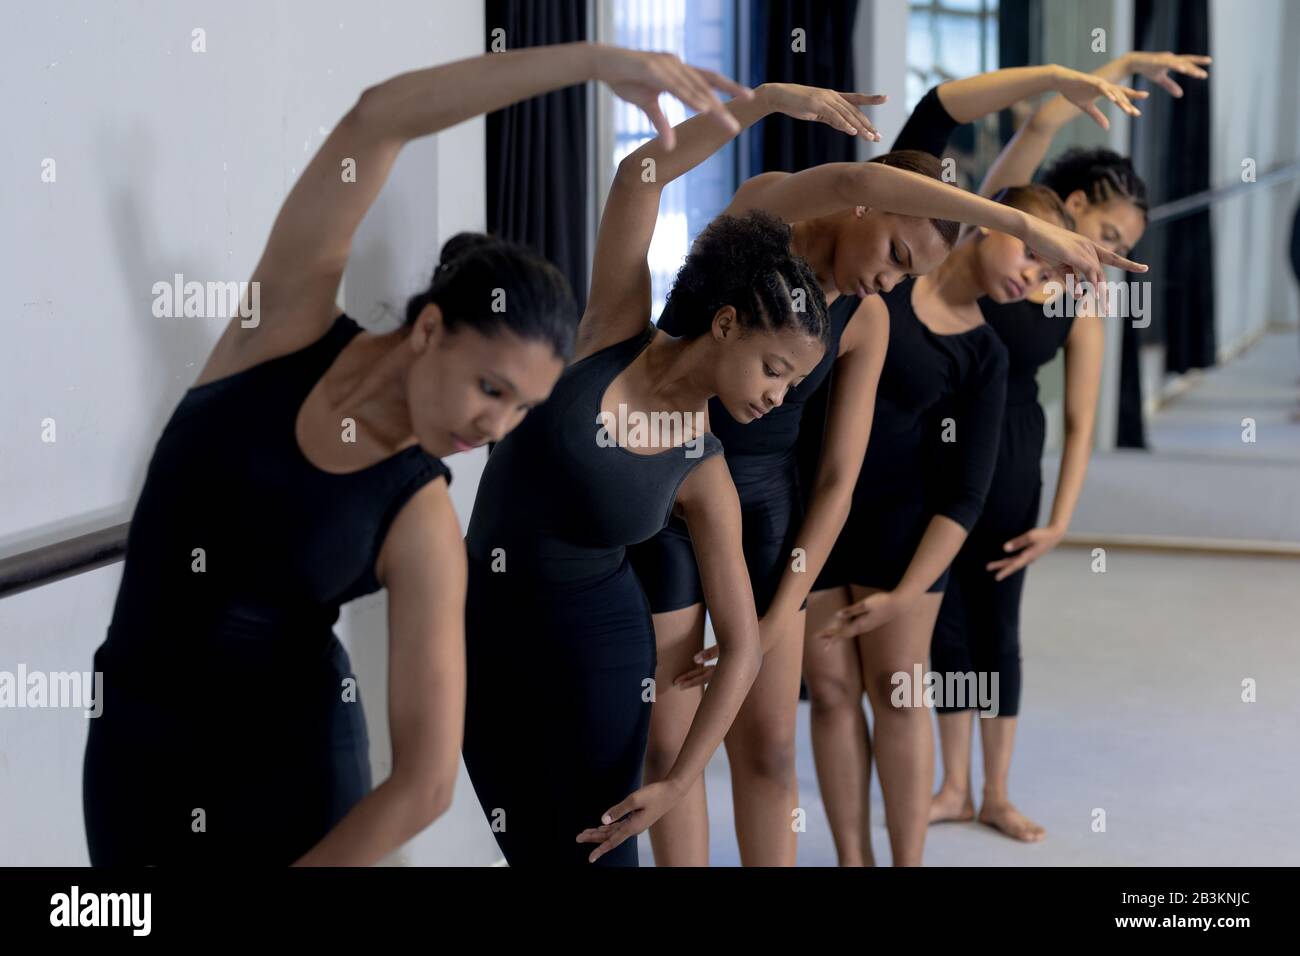 Groupe de danseuses féminines pratiquant une routine de danse dans un studio Banque D'Images